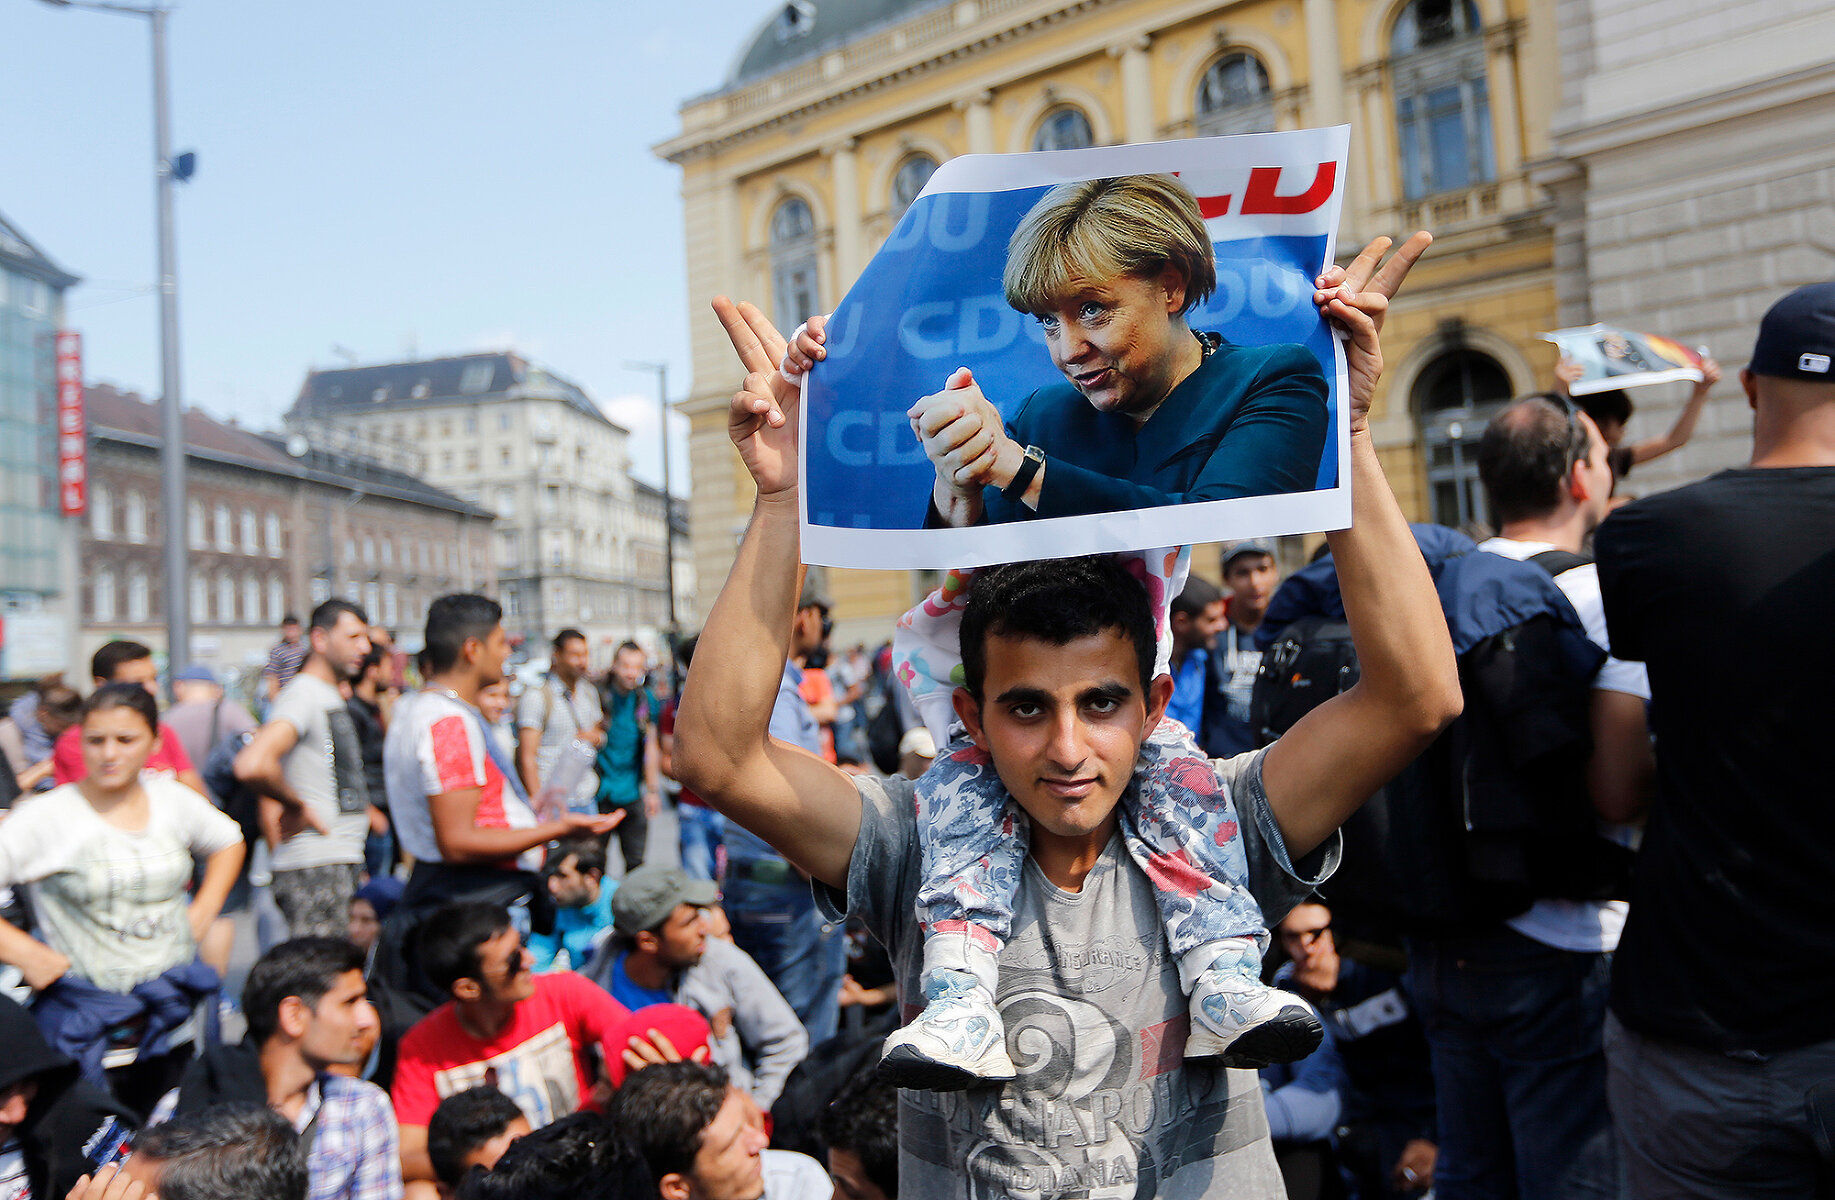 <p>Мигрант демонстрирует портрет Меркель перед тем, как направиться пешком в Австрию из Будапешта, 4 сентября 2015 года</p>

<p>Ангела Меркель была одним из самых заметных сторонников мягкой политики в отношении мигрантов во время кризиса 2015-2017 годов из-за войны в Сирии.&nbsp;&laquo;Мы справимся&raquo;, &ndash;&nbsp;<a href="https://www.politico.eu/article/the-phrase-that-haunts-angela-merkel/" target="_blank">говорила</a>&nbsp;политик про поток мигрантов в Европу. Впоследствии Меркель остро критиковали как за сказанное, так и за послабления в приеме мигрантов, которые, по мнению ее оппонентов, привели к росту преступности со стороны приезжих &mdash; большой резонанс получило, например, <a href="https://tvrain.ru/news/v_germanii-470681/" target="_blank">убийство</a> в Хемнице&nbsp;в 2018 году и <a href="https://www.washingtonpost.com/news/worldviews/wp/2016/07/10/leaked-document-says-2000-men-allegedly-assaulted-1200-german-women-on-new-years-eve/" target="_blank">массовые изнасилования</a> в канун Нового года в декабре 2015 года.</p>